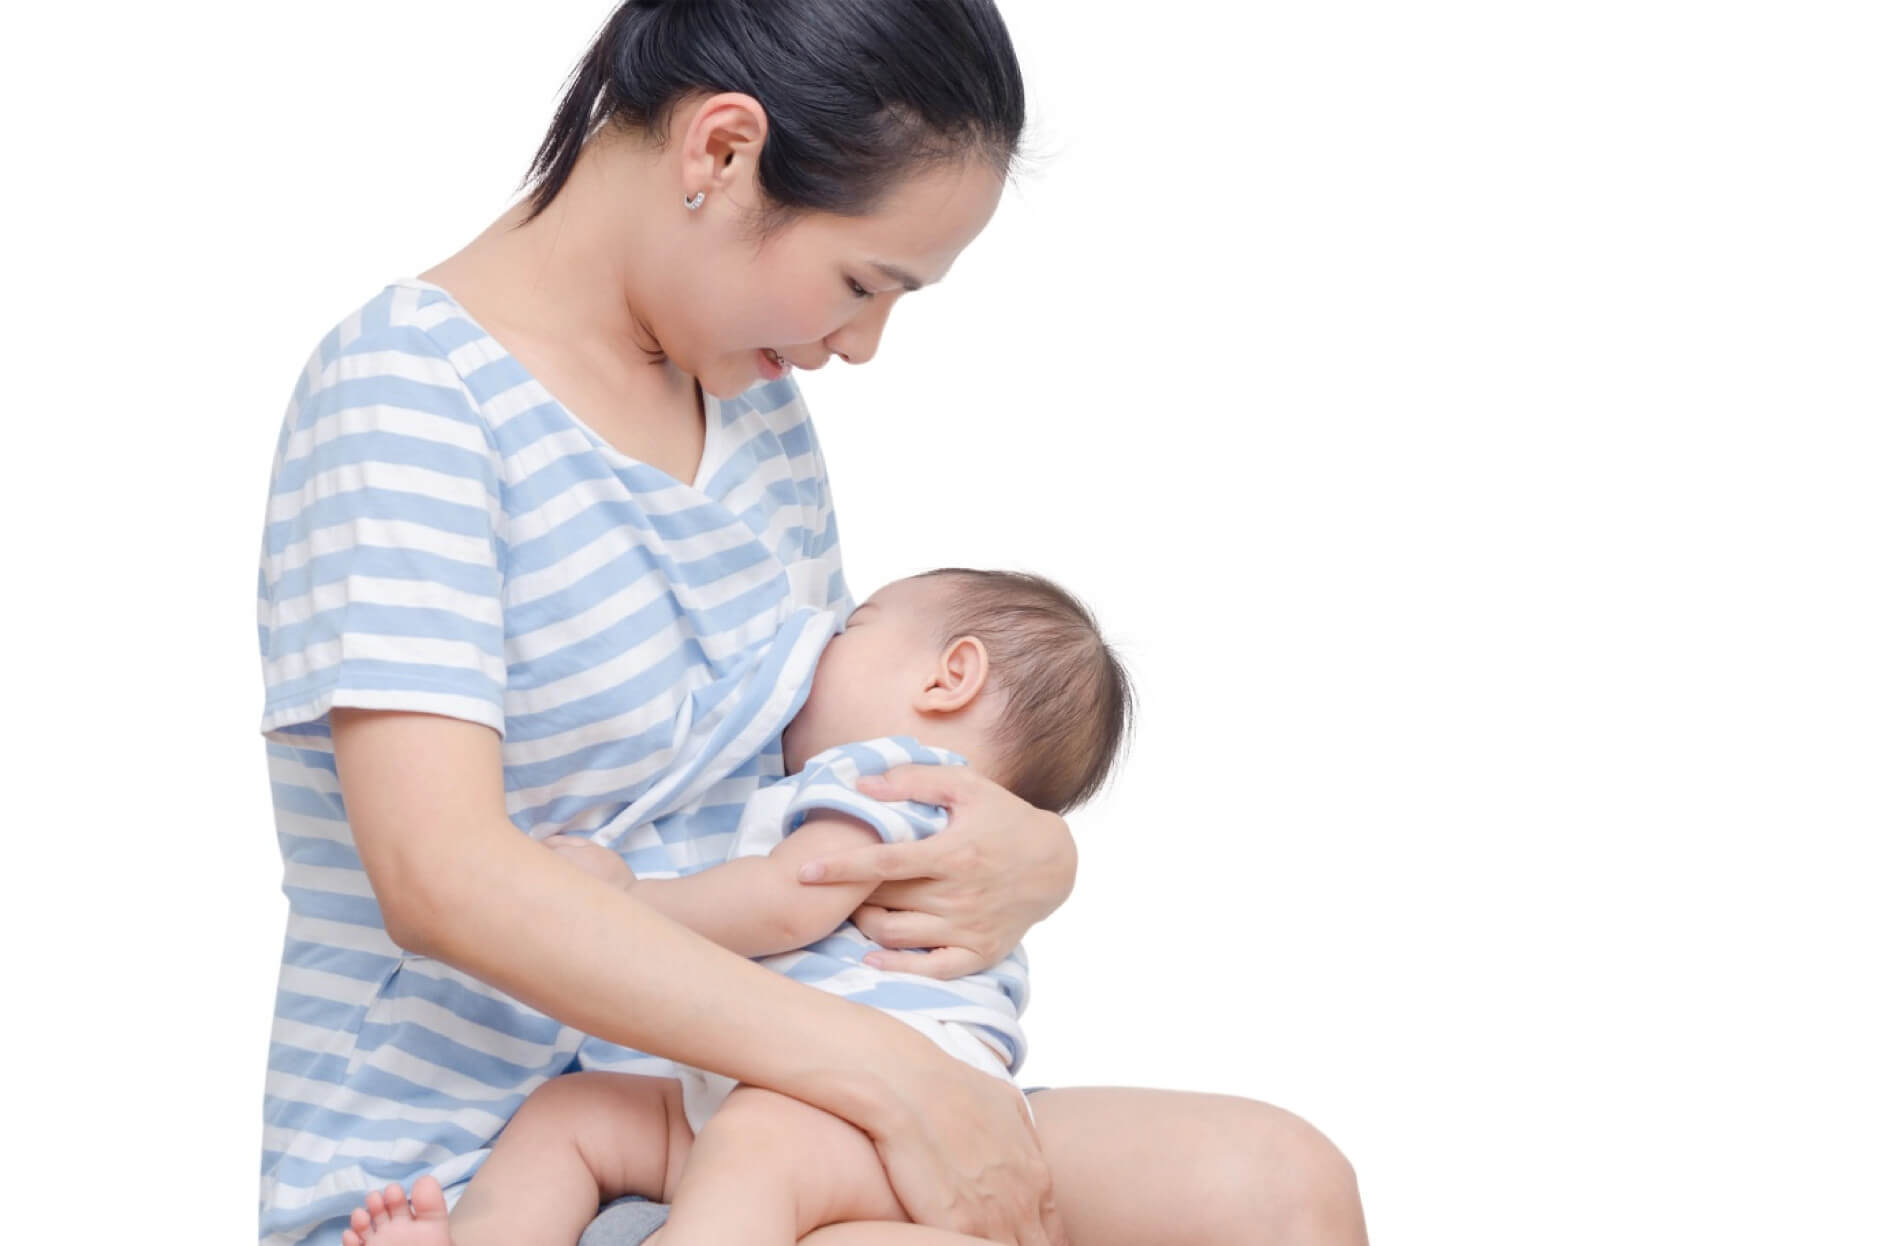 Ảnh hưởng đến bầu ngực của mẹ khi cai sữa không đúng cách